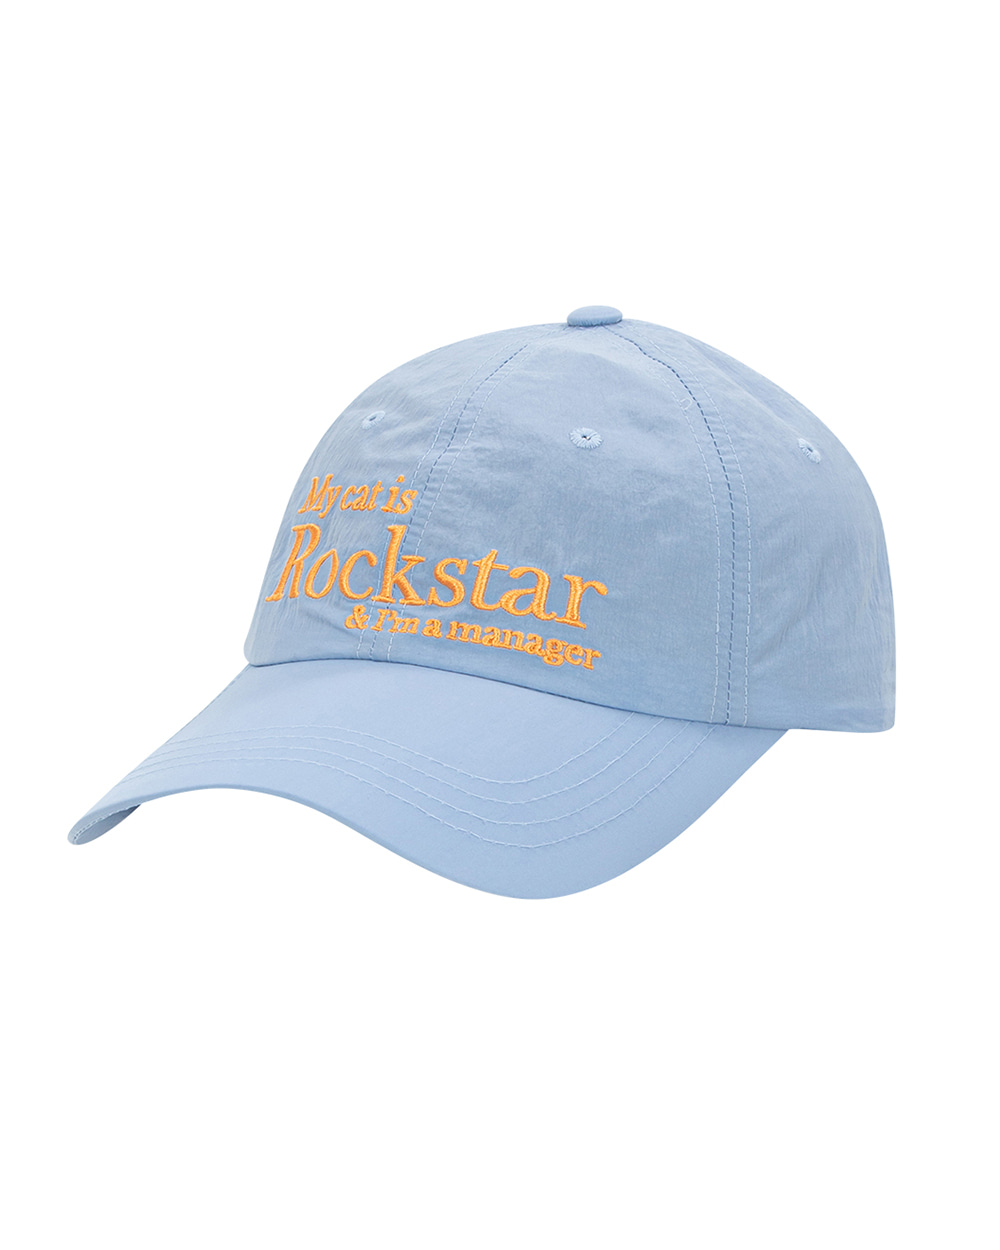 조거쉬 Rockstar cat cap (Sky blue)